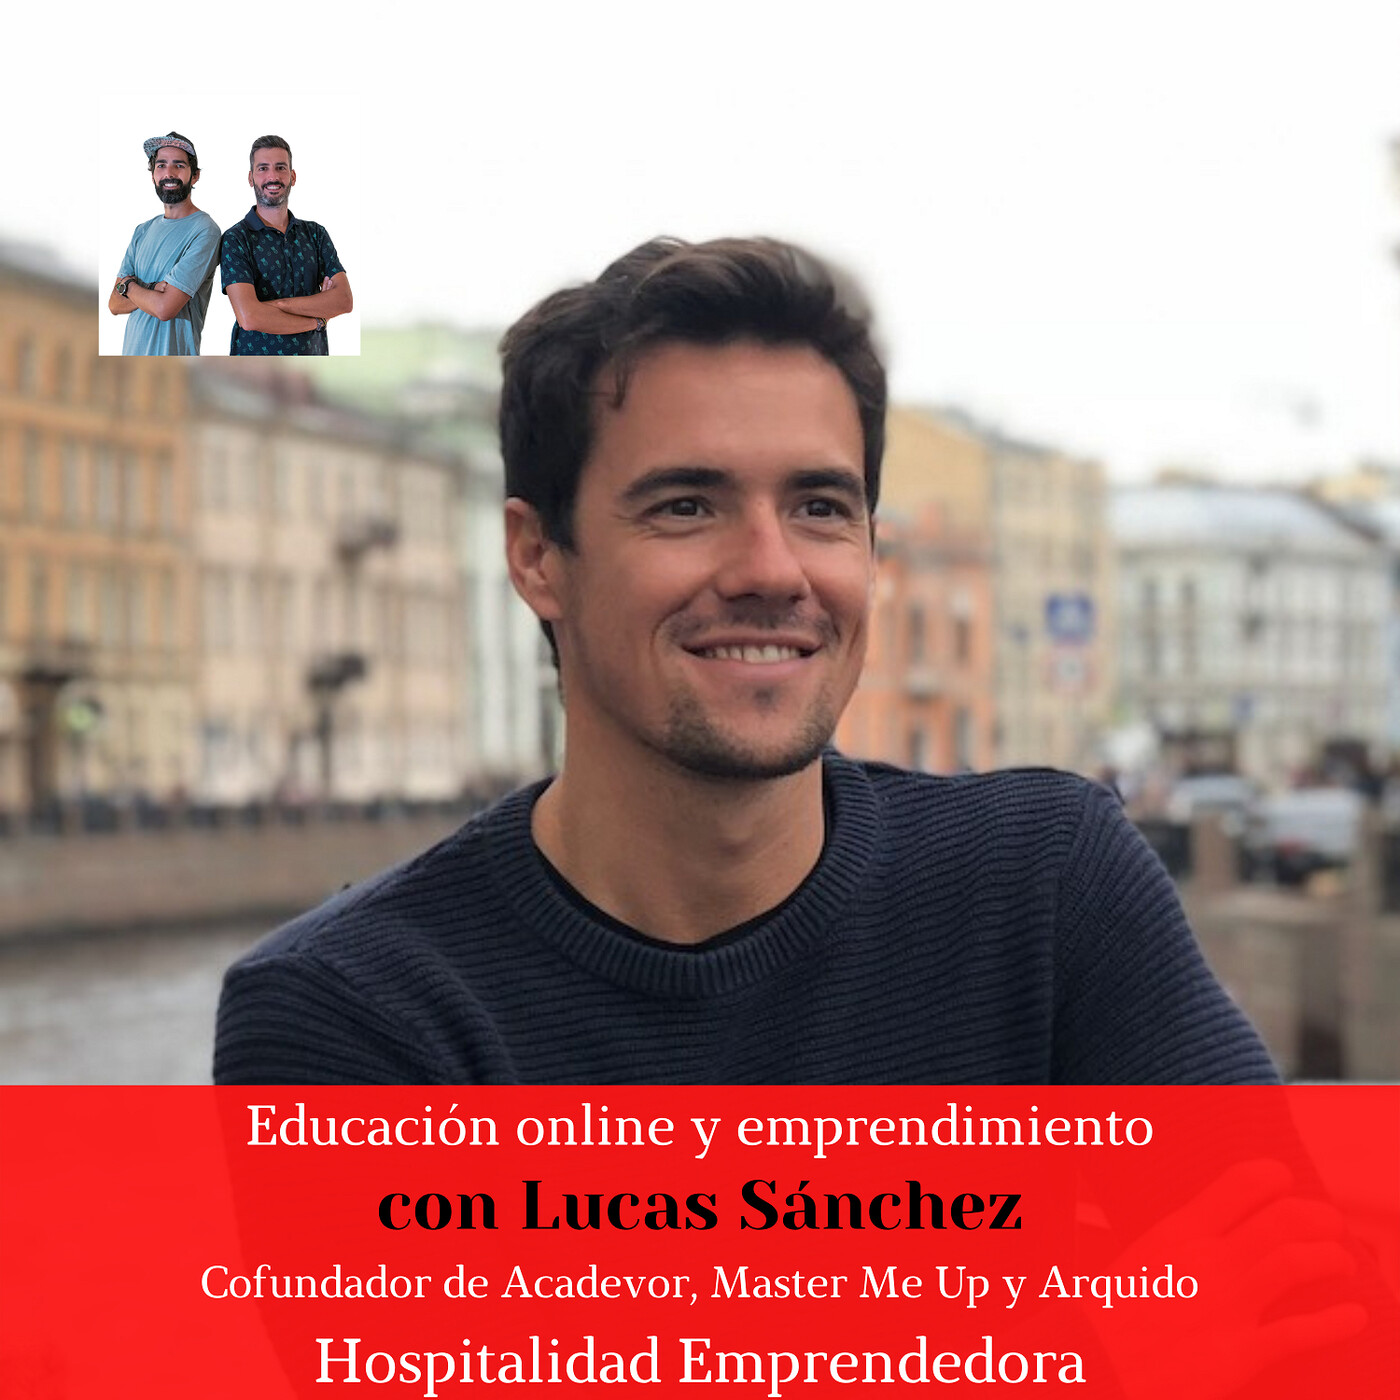 Educación online y emprendimiento con Lucas Sánchez. Temp 5 Episodio 6